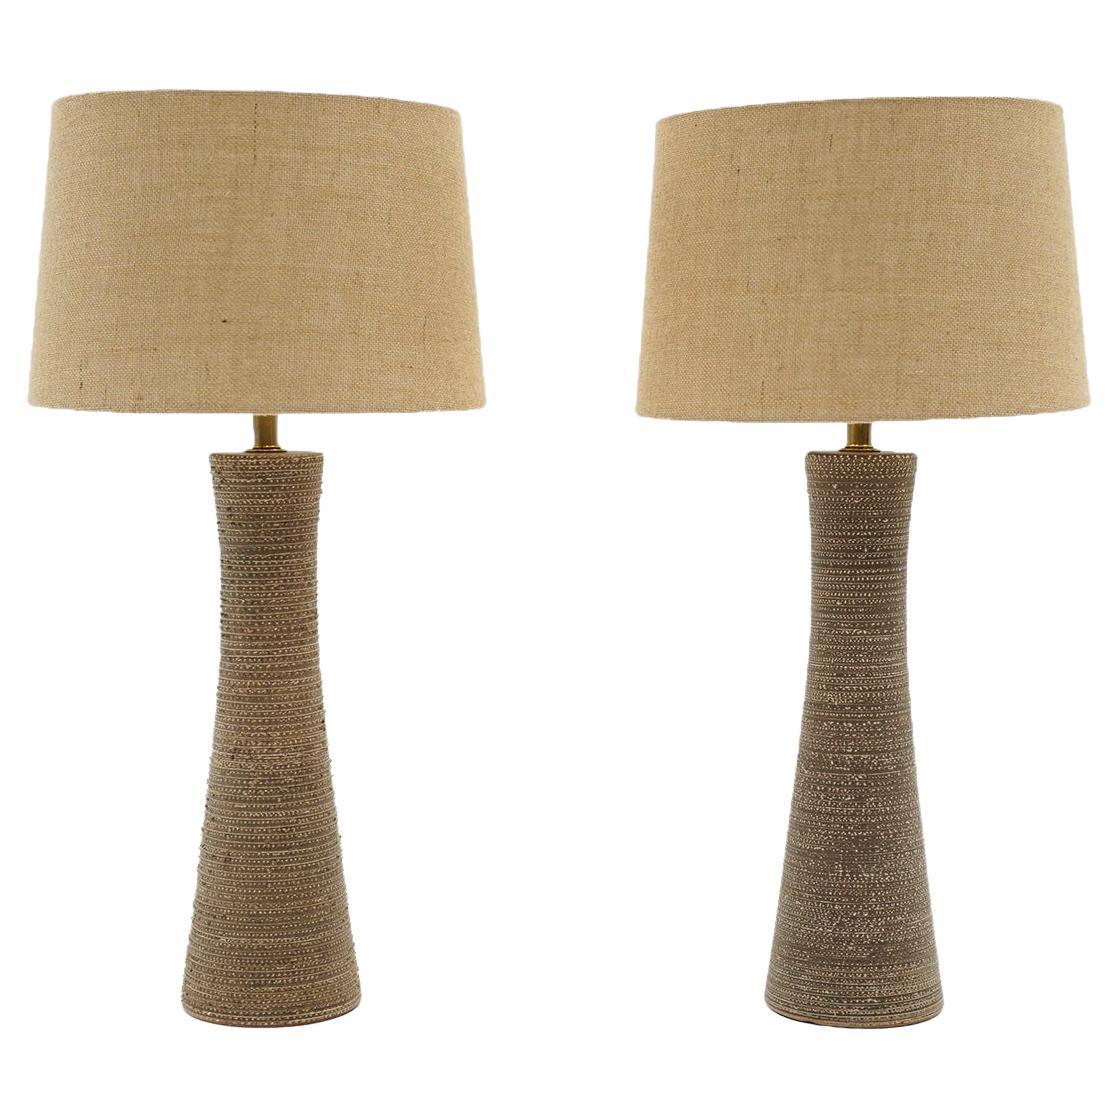 Paar hohe Tischlampen aus strukturierter Keramik im Stil von Gorden und Jane Martz